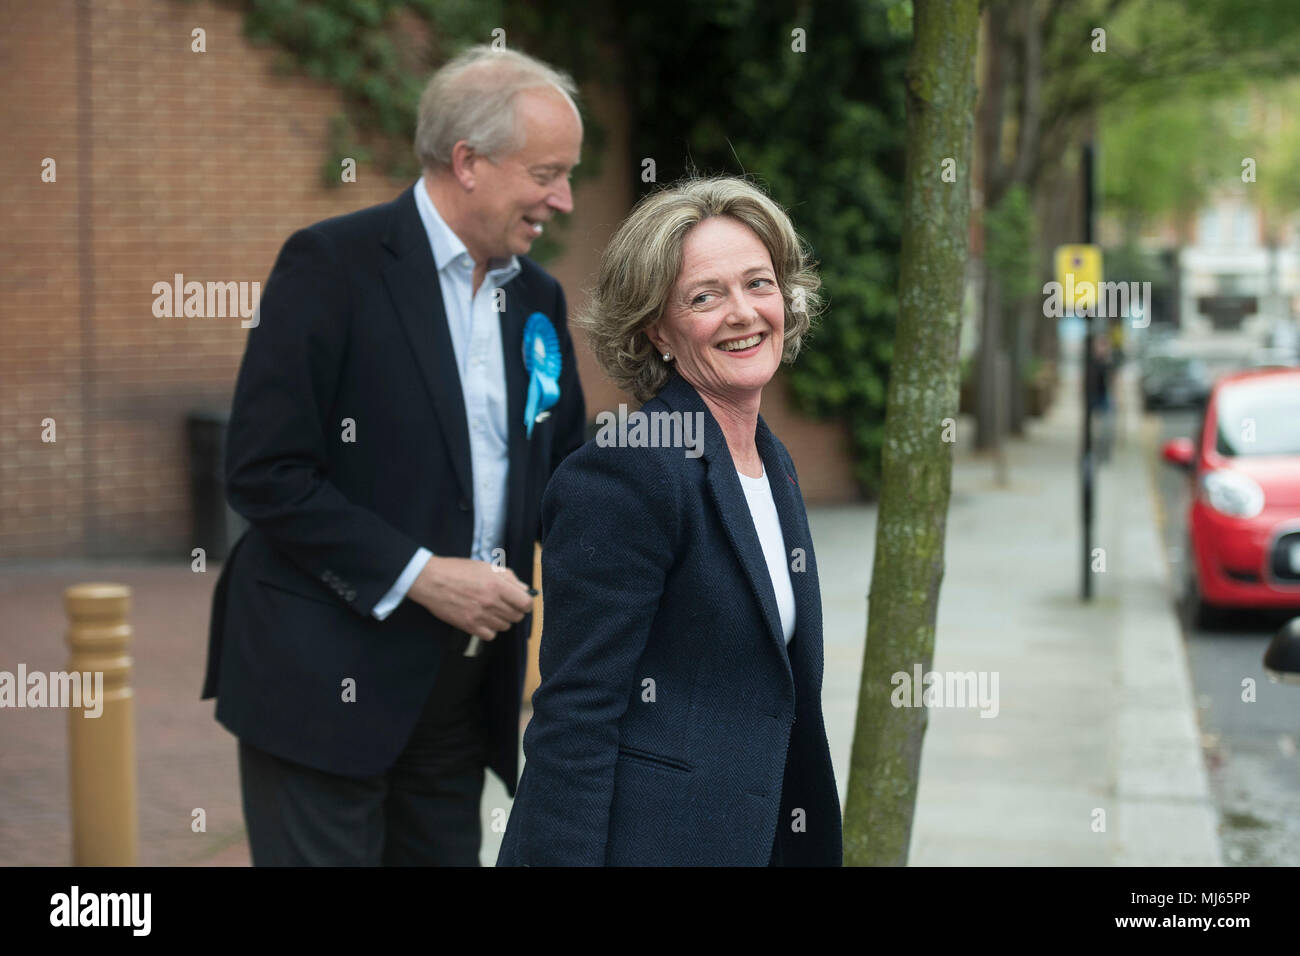 Elizabeth Campbell verlässt mit ihrem Mann Colin Campbell nachdem während der Kommunalwahlen für Kensington und Chelsea gewählt als die Konservativen nach einer Zählung im Kensington Town Hall, London gepflegt. Stockfoto